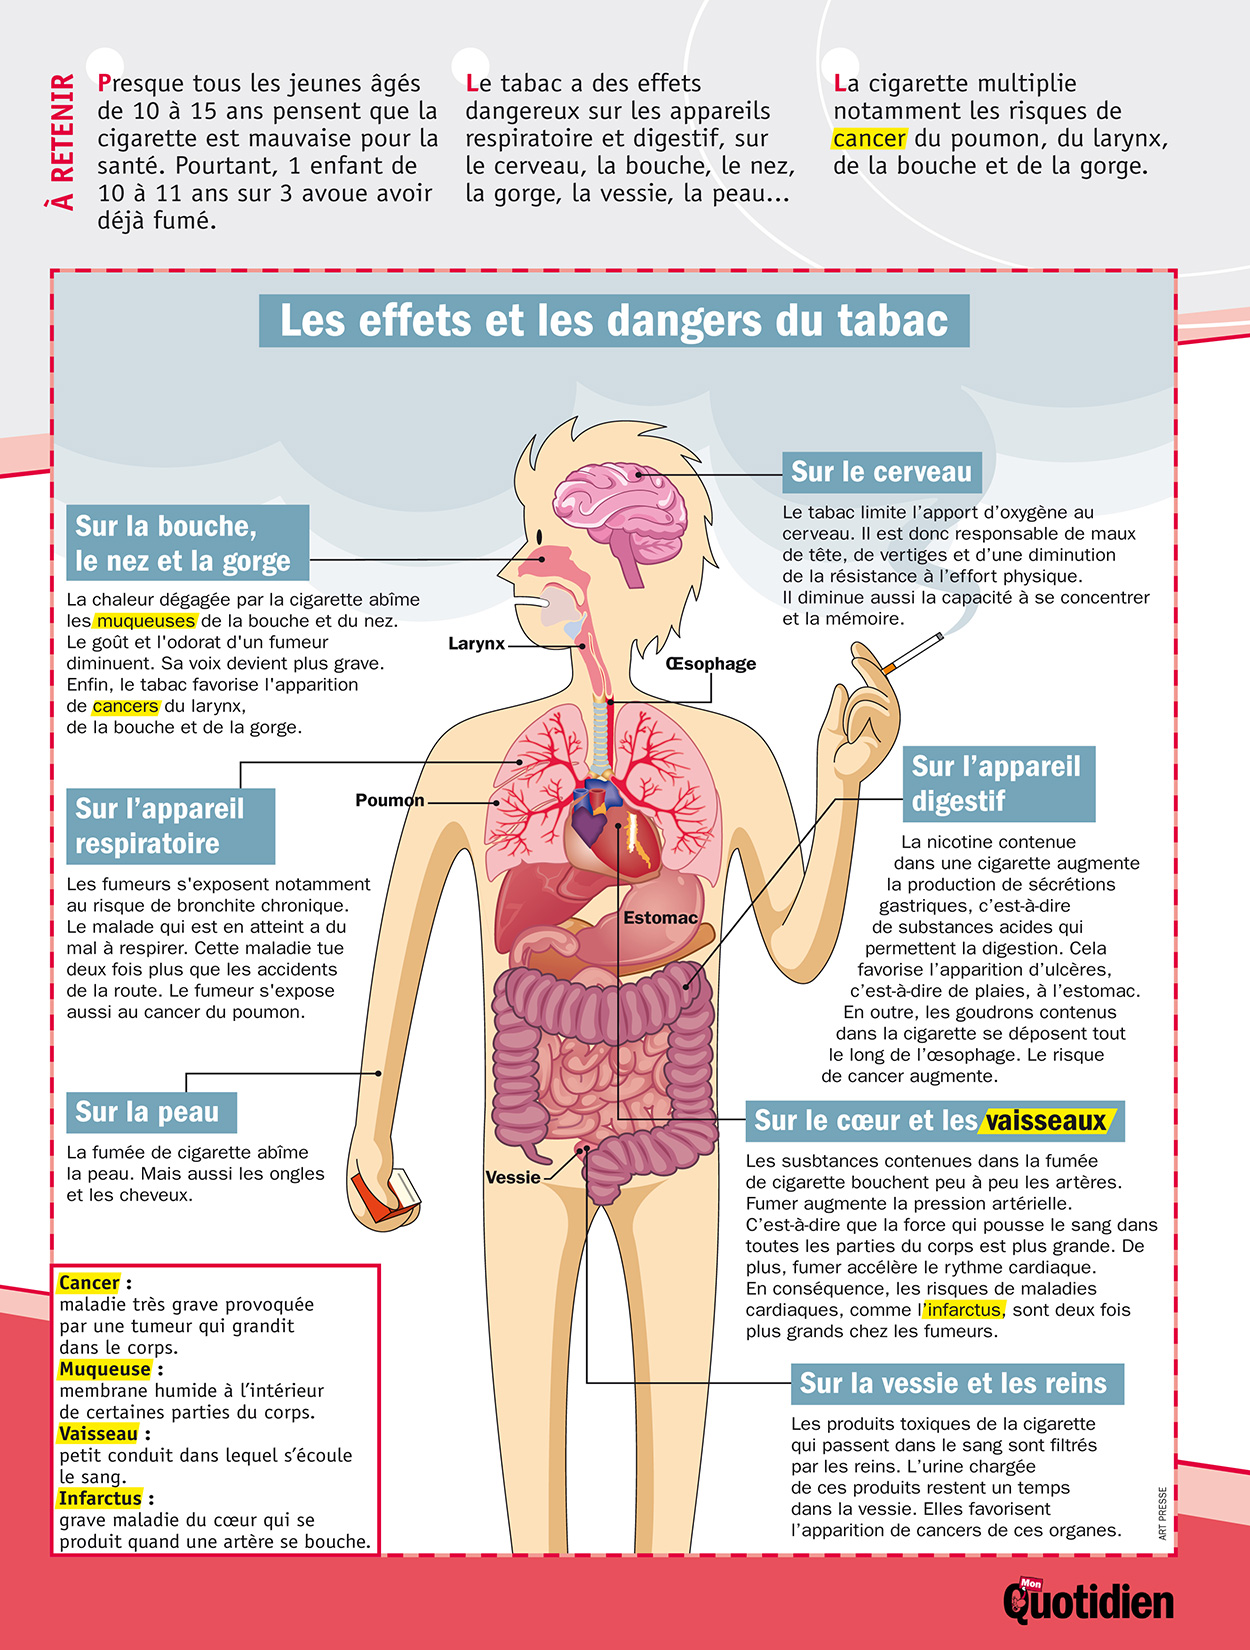  Infographie Mon Quotidien : Les effets et les dangers du tabac